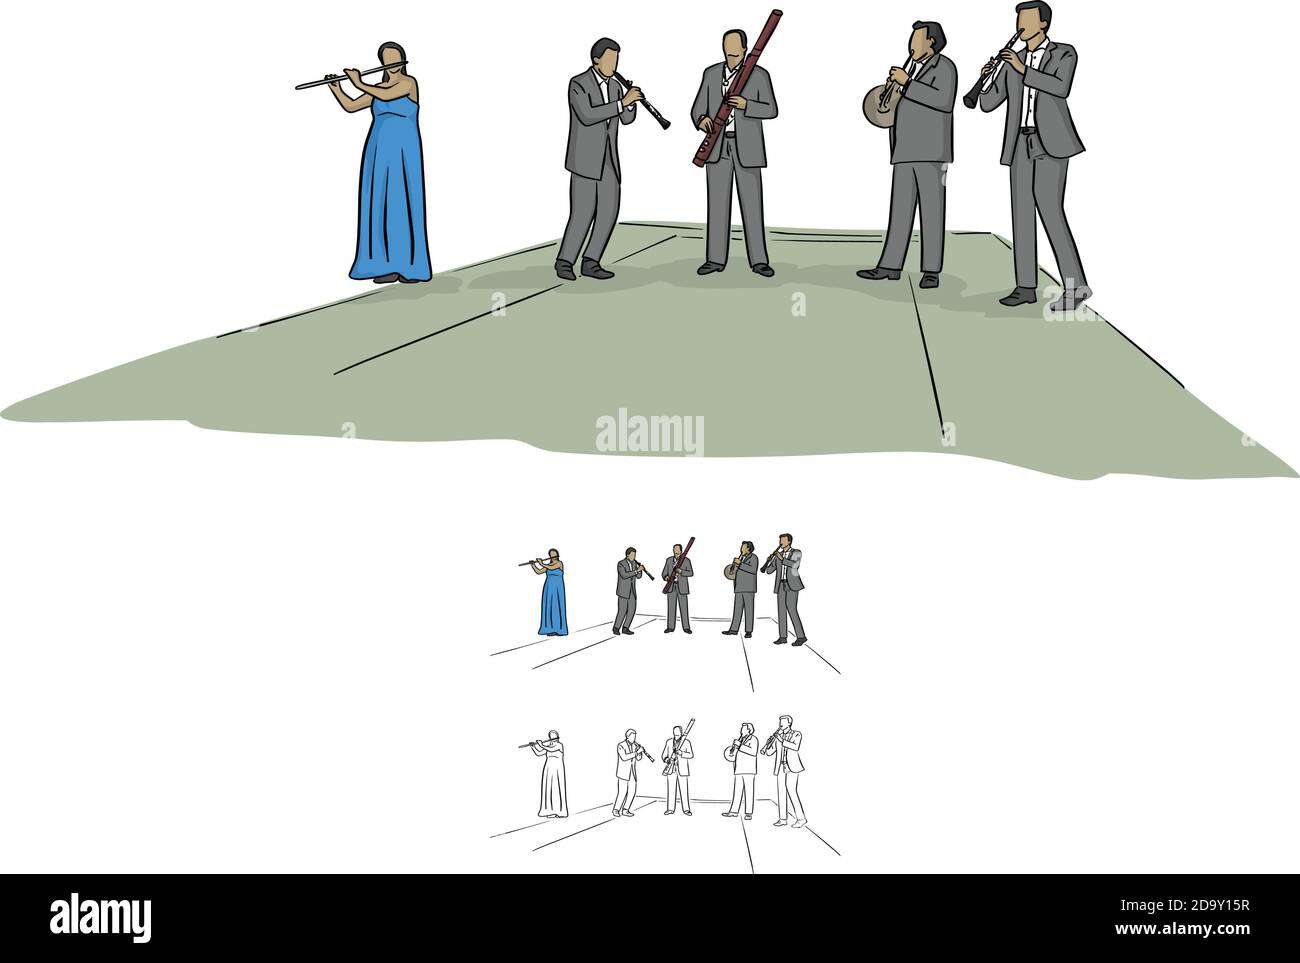 Les musiciens de quintette jouant de la musique sur scène, l'illustration vectorielle esquisse un peu tracé à la main avec des lignes noires isolées sur fond blanc Illustration de Vecteur